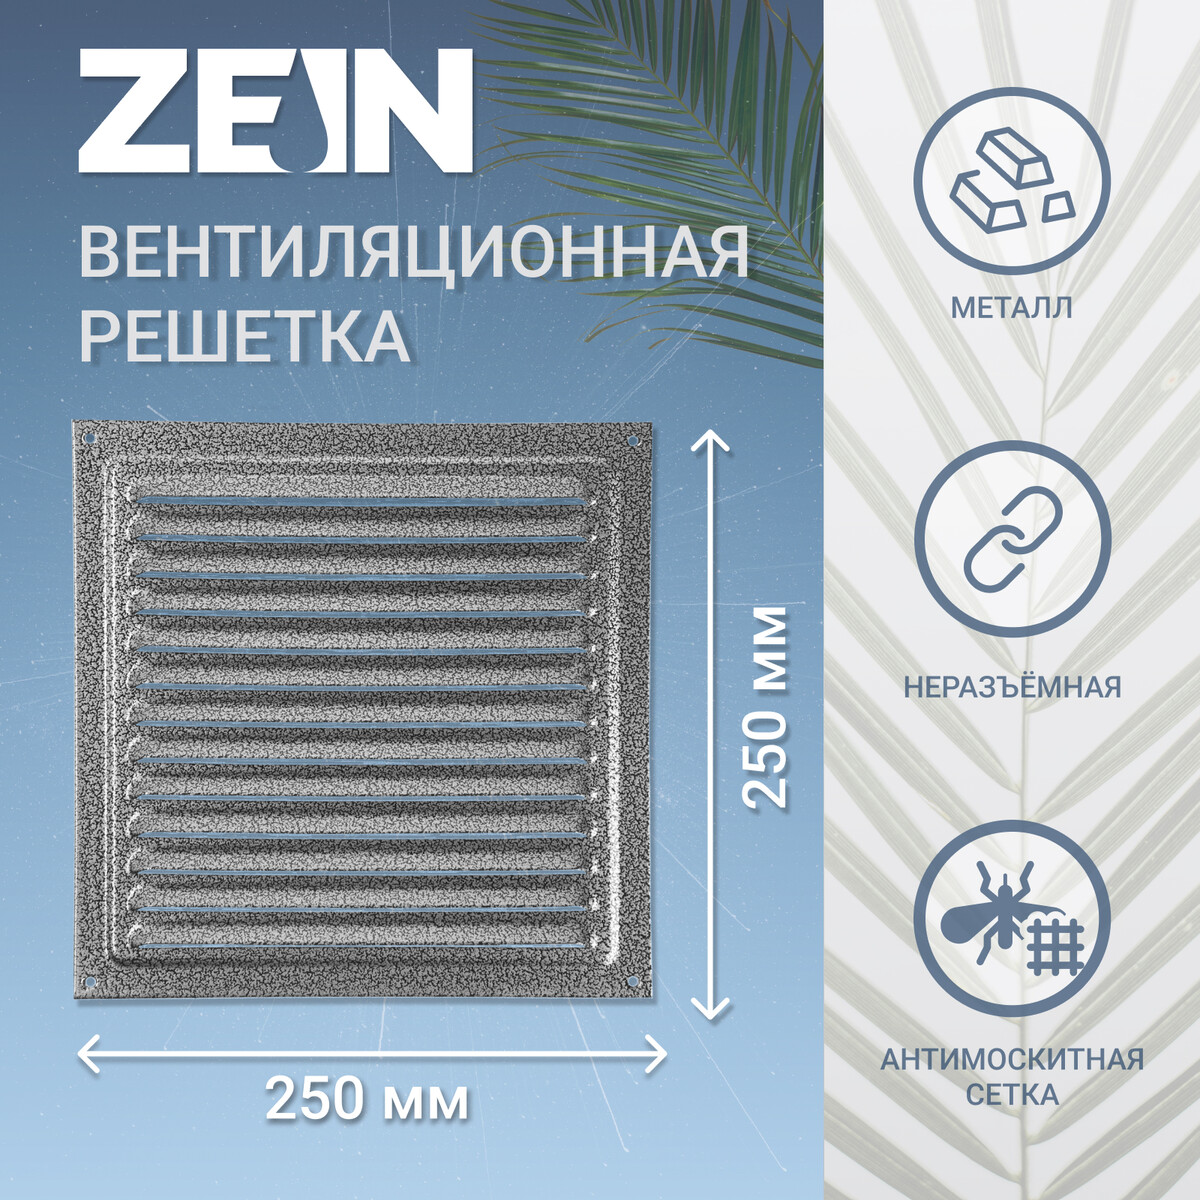 Решетка вентиляционная zein люкс рм2525ср, 250 х 250 мм, с сеткой, металлическая, серебро ZEIN, цвет серебристый